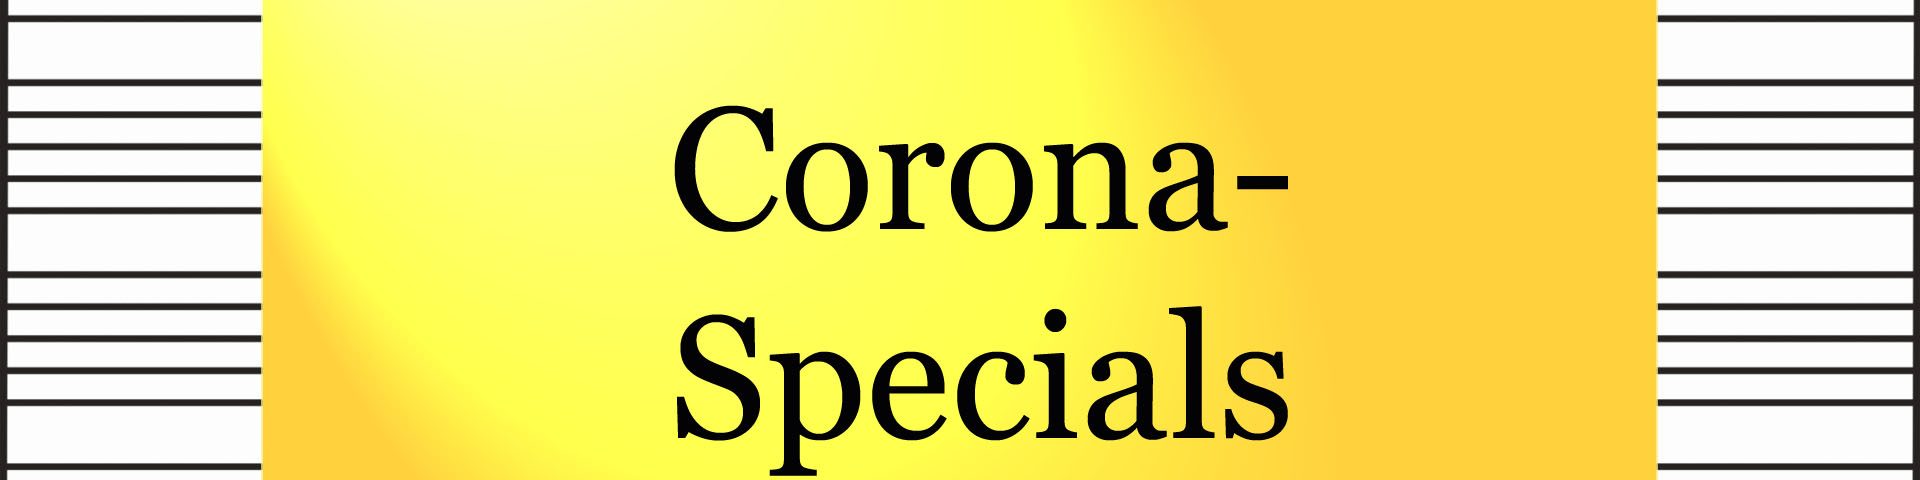 Corona-Specials - kultur4all.de